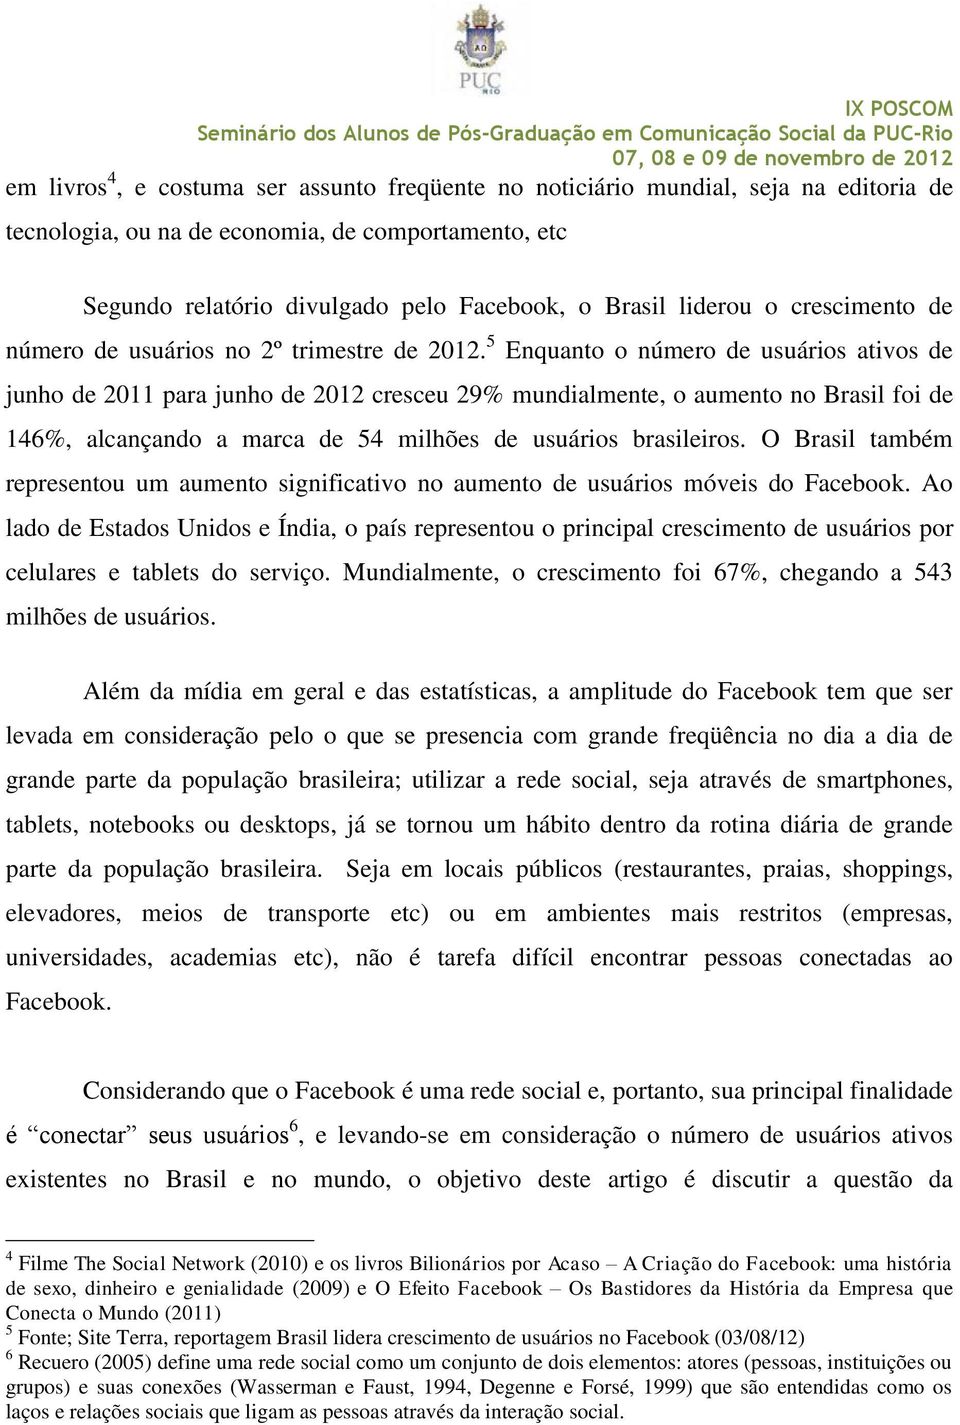 5 Enquanto o número de usuários ativos de junho de 2011 para junho de 2012 cresceu 29% mundialmente, o aumento no Brasil foi de 146%, alcançando a marca de 54 milhões de usuários brasileiros.